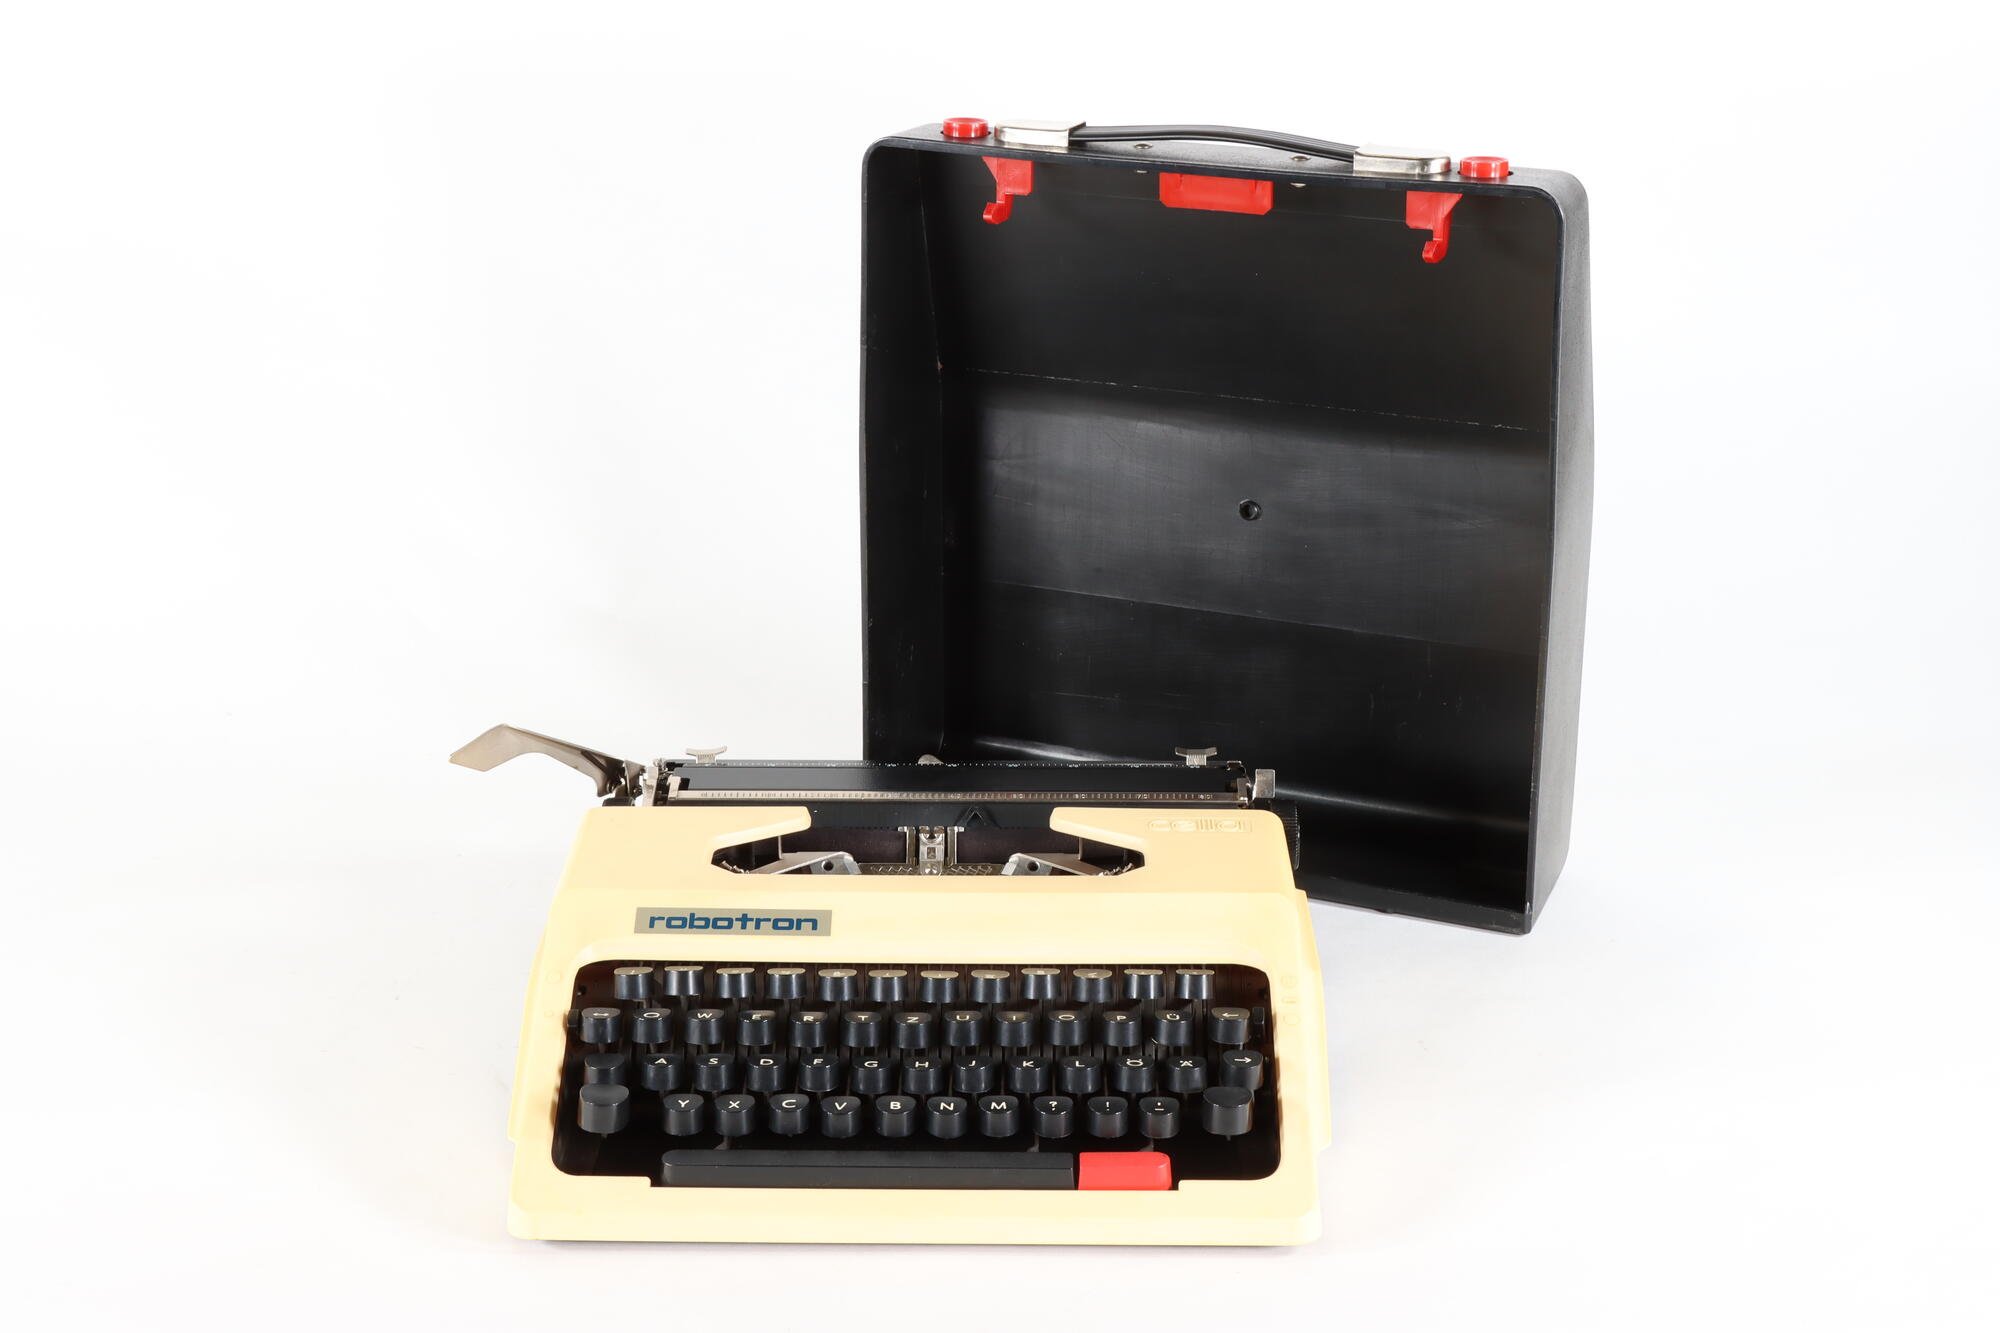 Schreibmaschine, Front mit Koffer (Industriemuseum Chemnitz; Fotografin: Marion Kaiser CC BY-NC-SA)